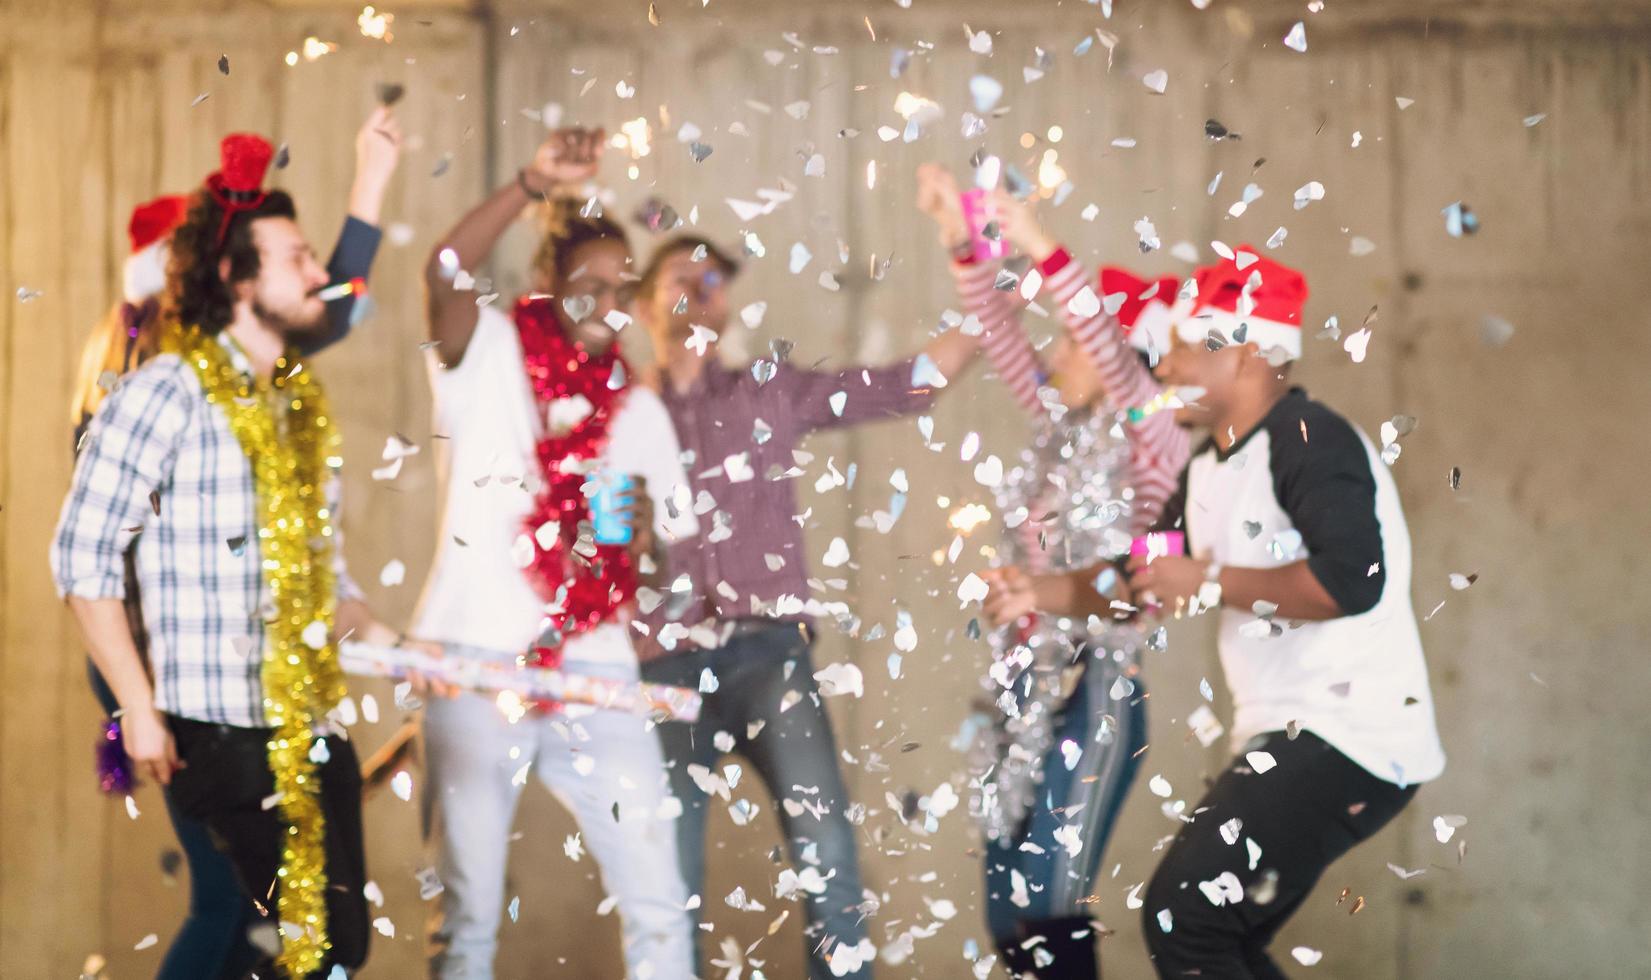 grupo multiétnico de empresários casuais com festa de confete foto